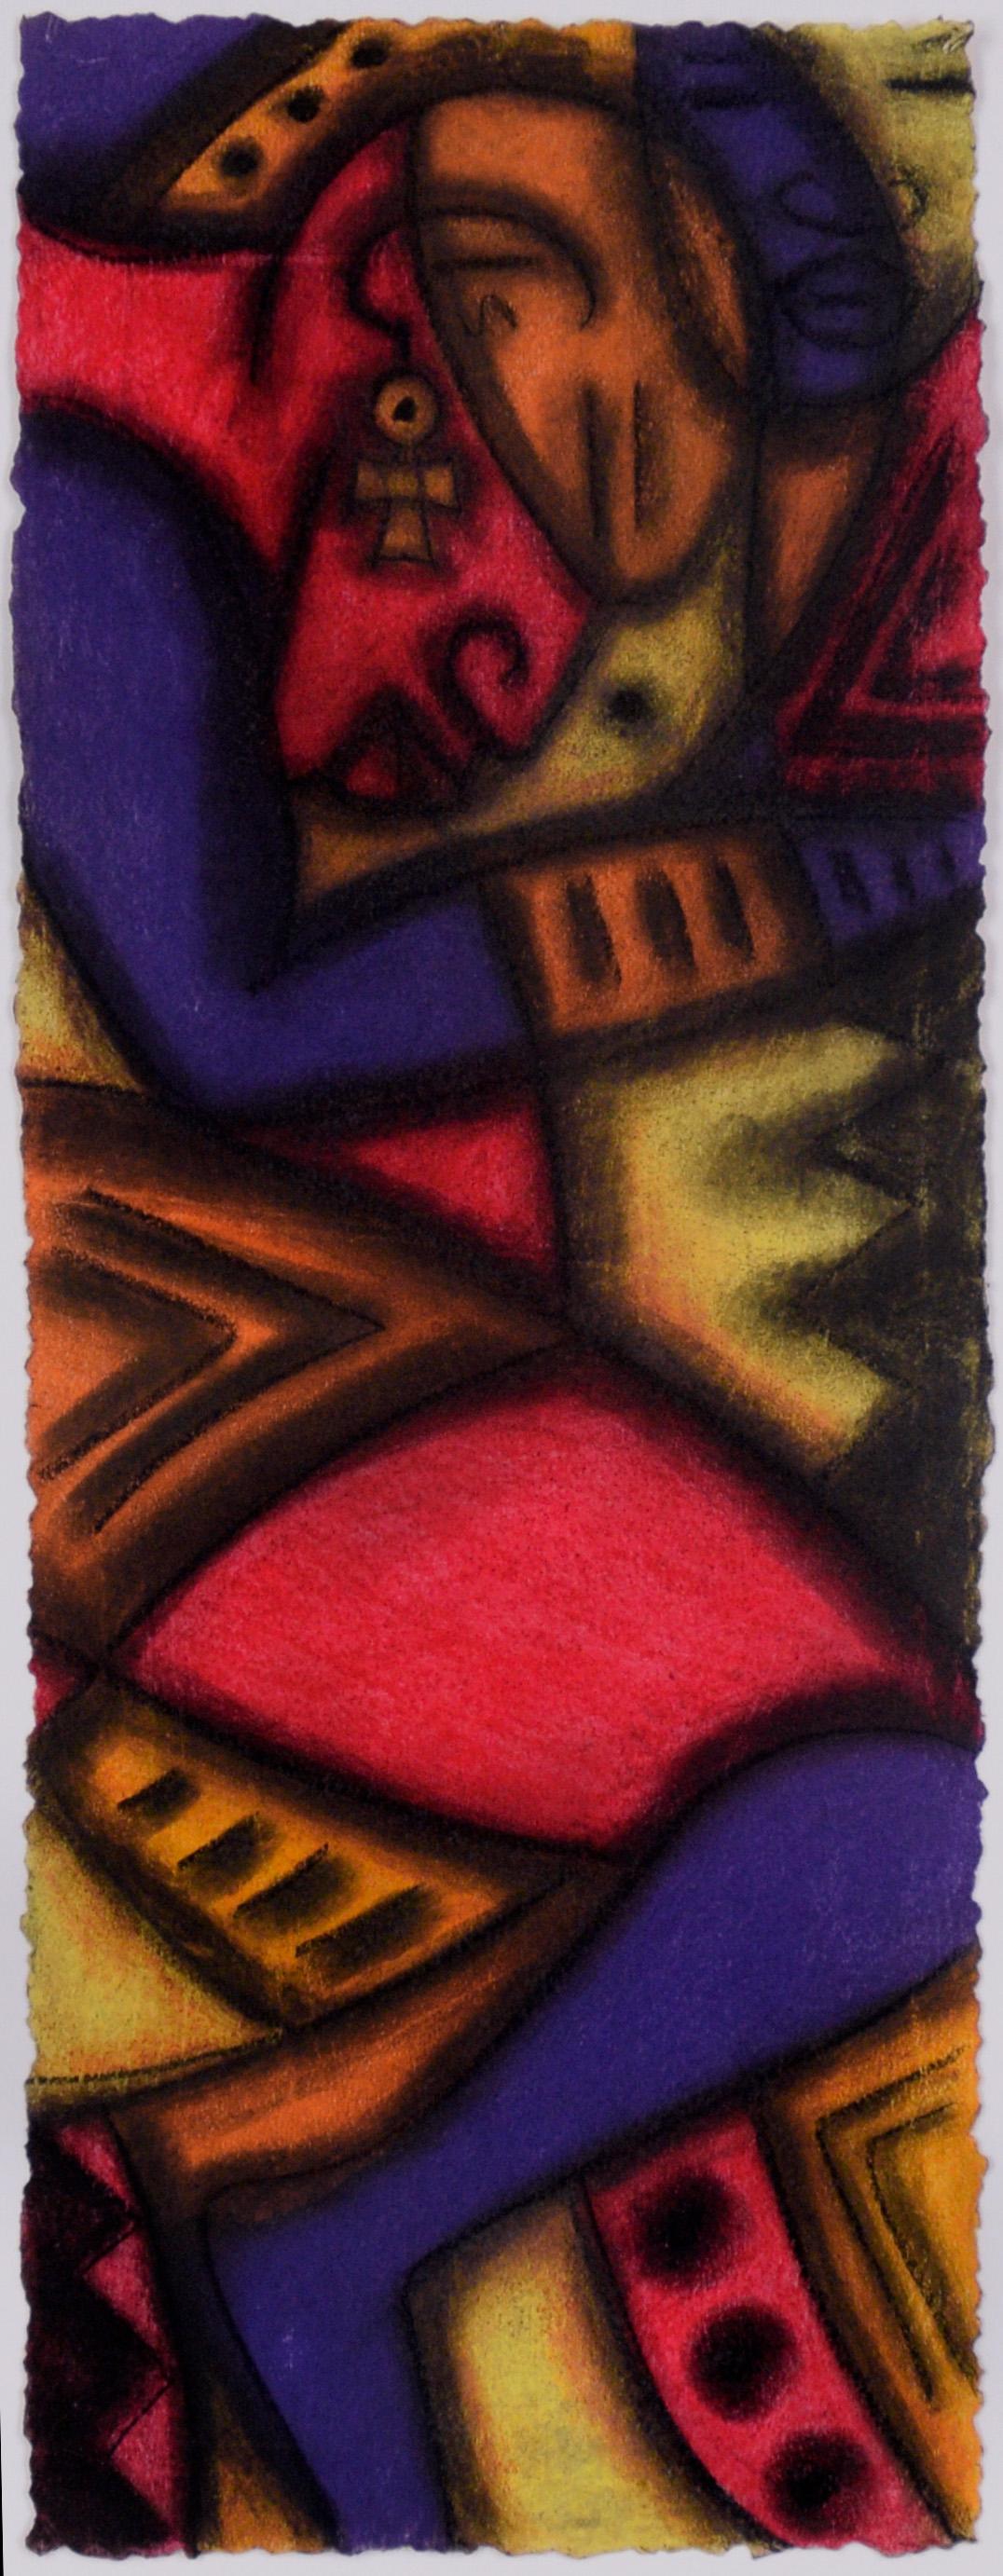 Abstrahierte schlafende weibliche Figurative in Pastell auf Papier

Lebendige abstrahierte schlafende weibliche Figur des Black Arts Bay Area Künstlers Kelvin Curry (Amerikaner, 20. Jahrhundert), um 2000. Eine auf der Seite schlafende Frau wird in